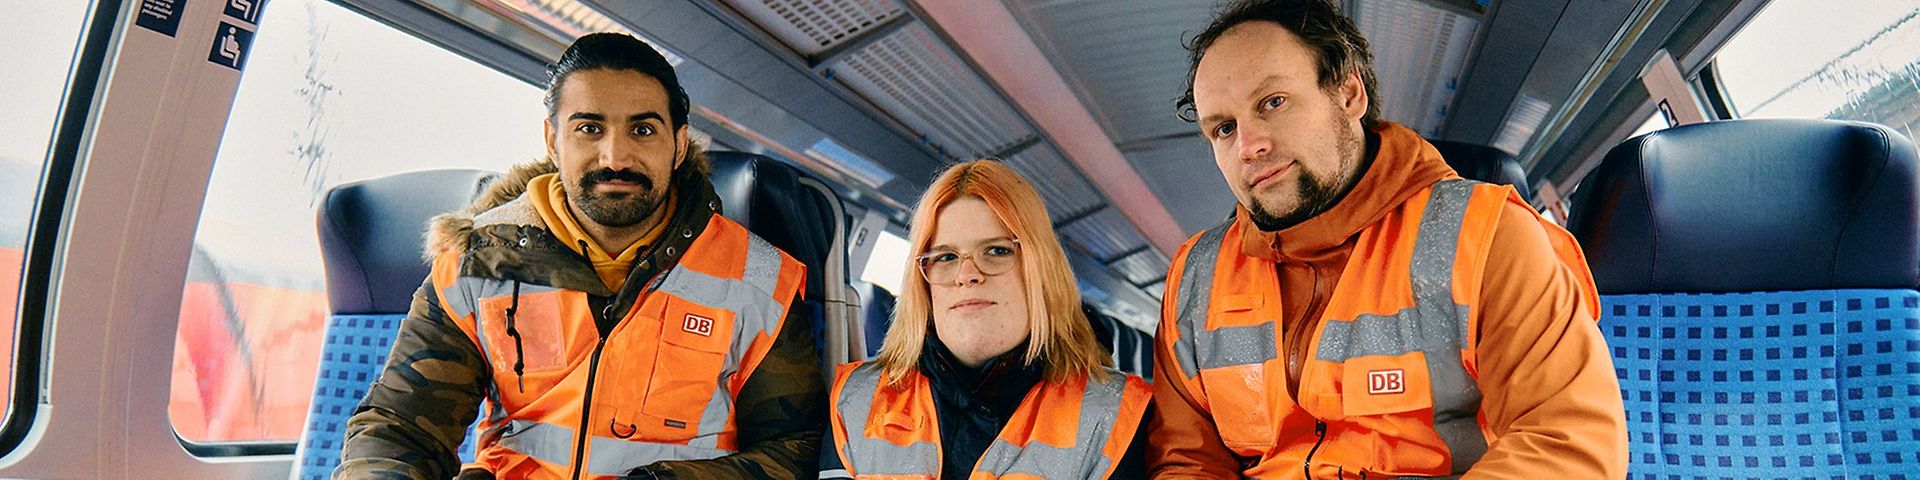 Zwei Männer und in der Mitte eine Frau sitzen in einem Regionalzug, sie tragen Warnwesten.